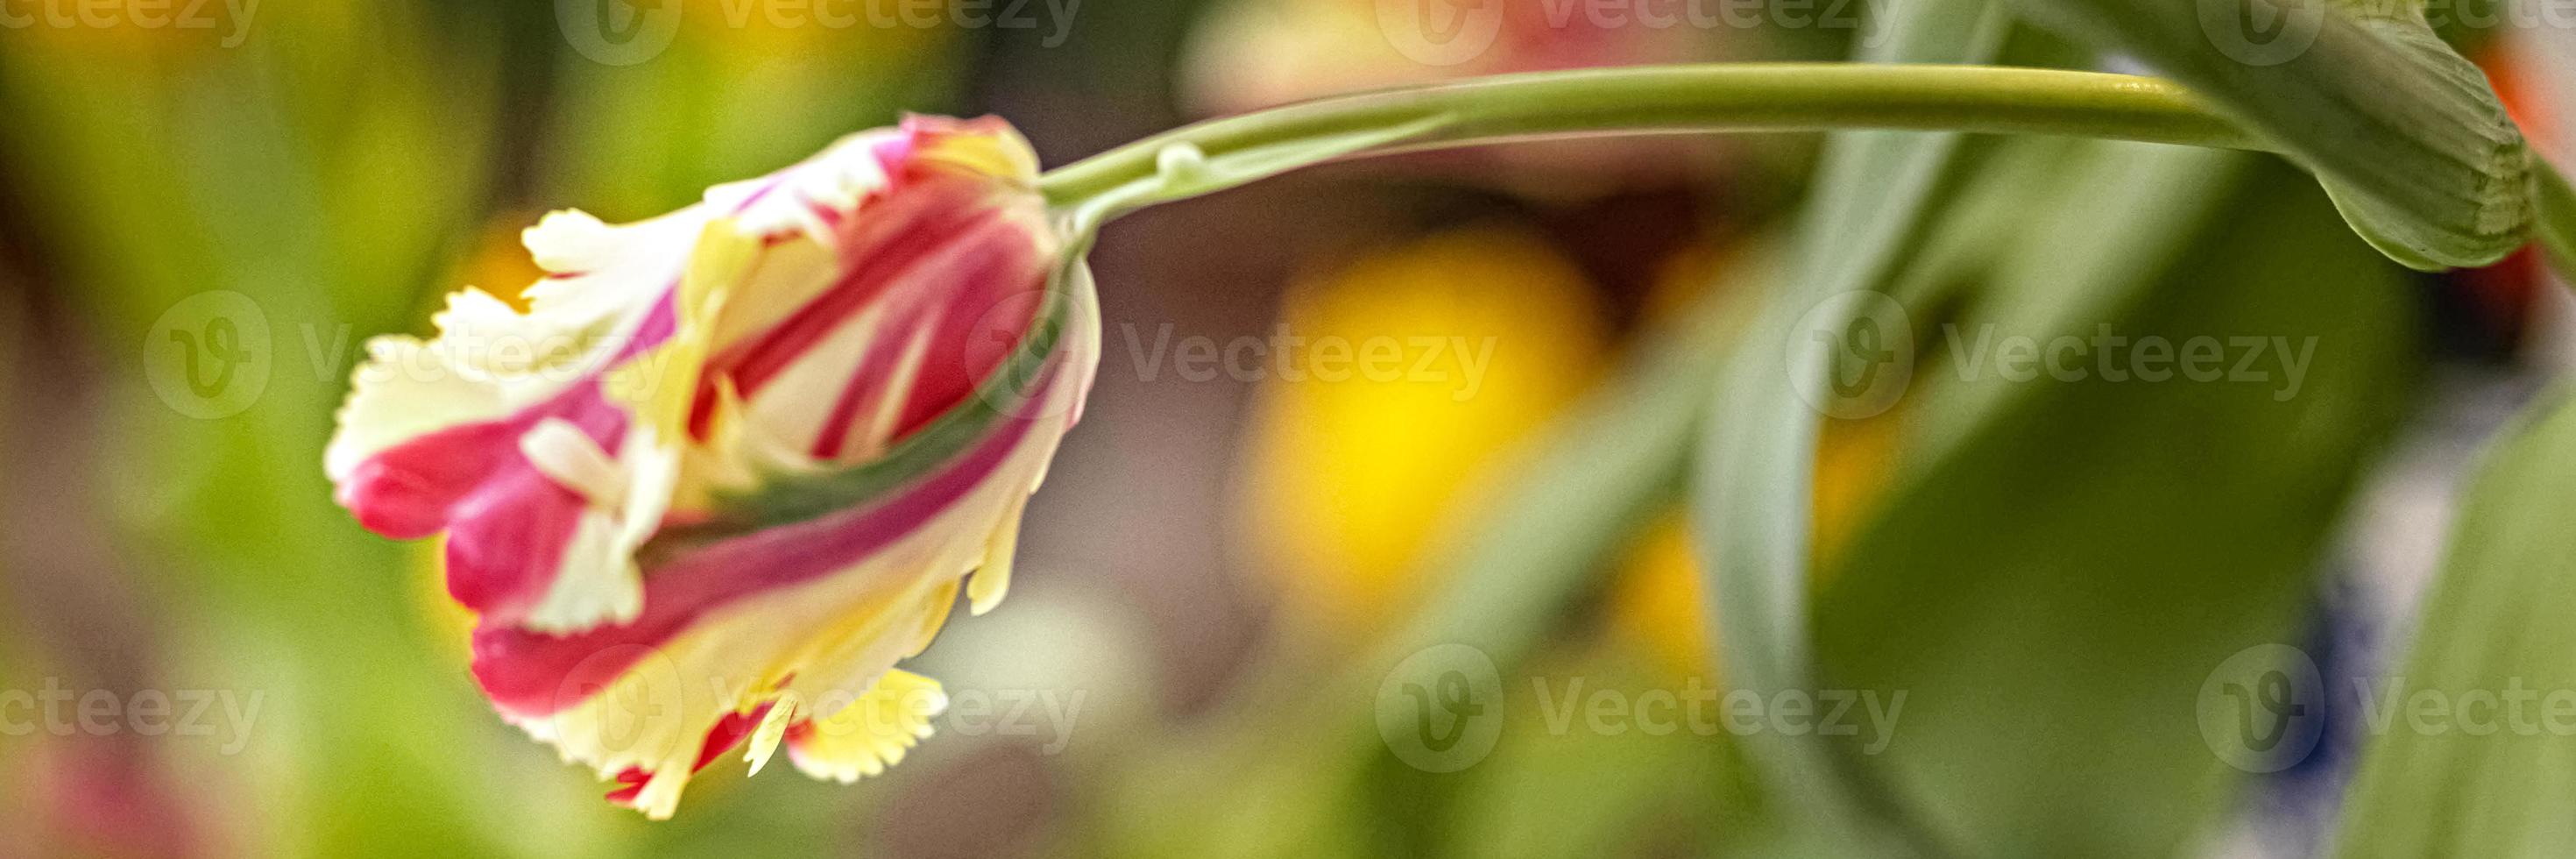 tulipano giallo-rosso in un vaso in giardino. primavera. fiore.banner foto